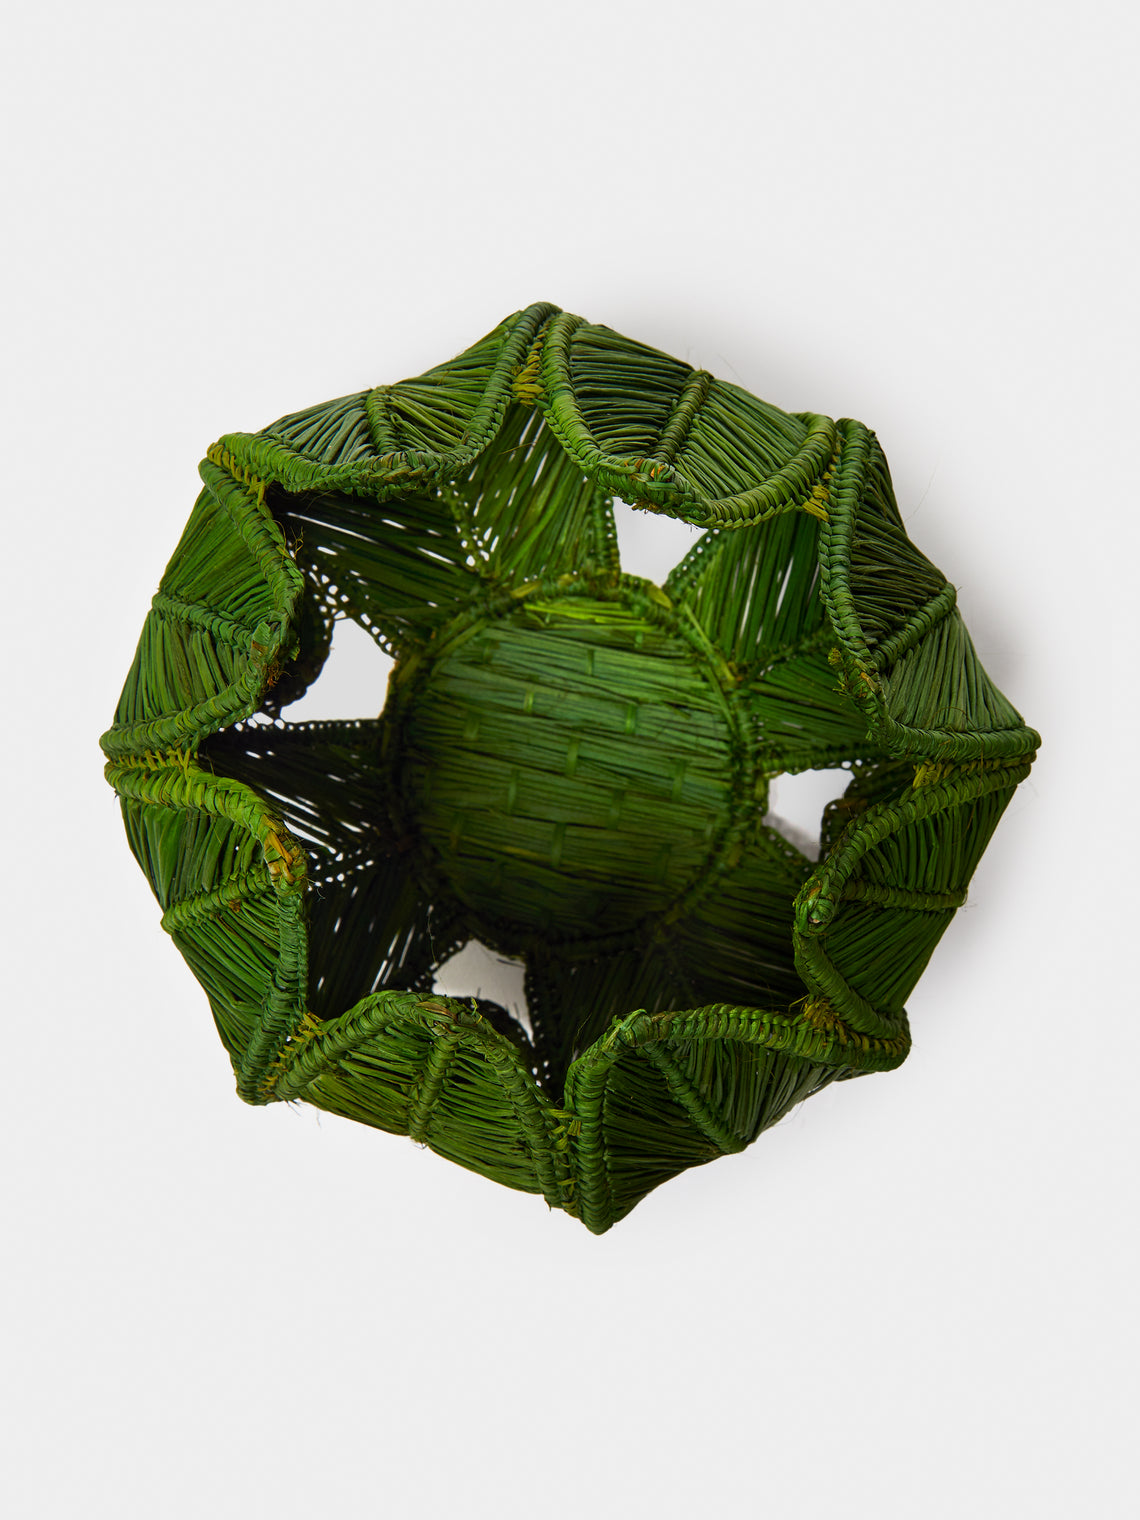 Artesanías del Atlántico - Handwoven Stromanthe Palm Vase - Green - ABASK